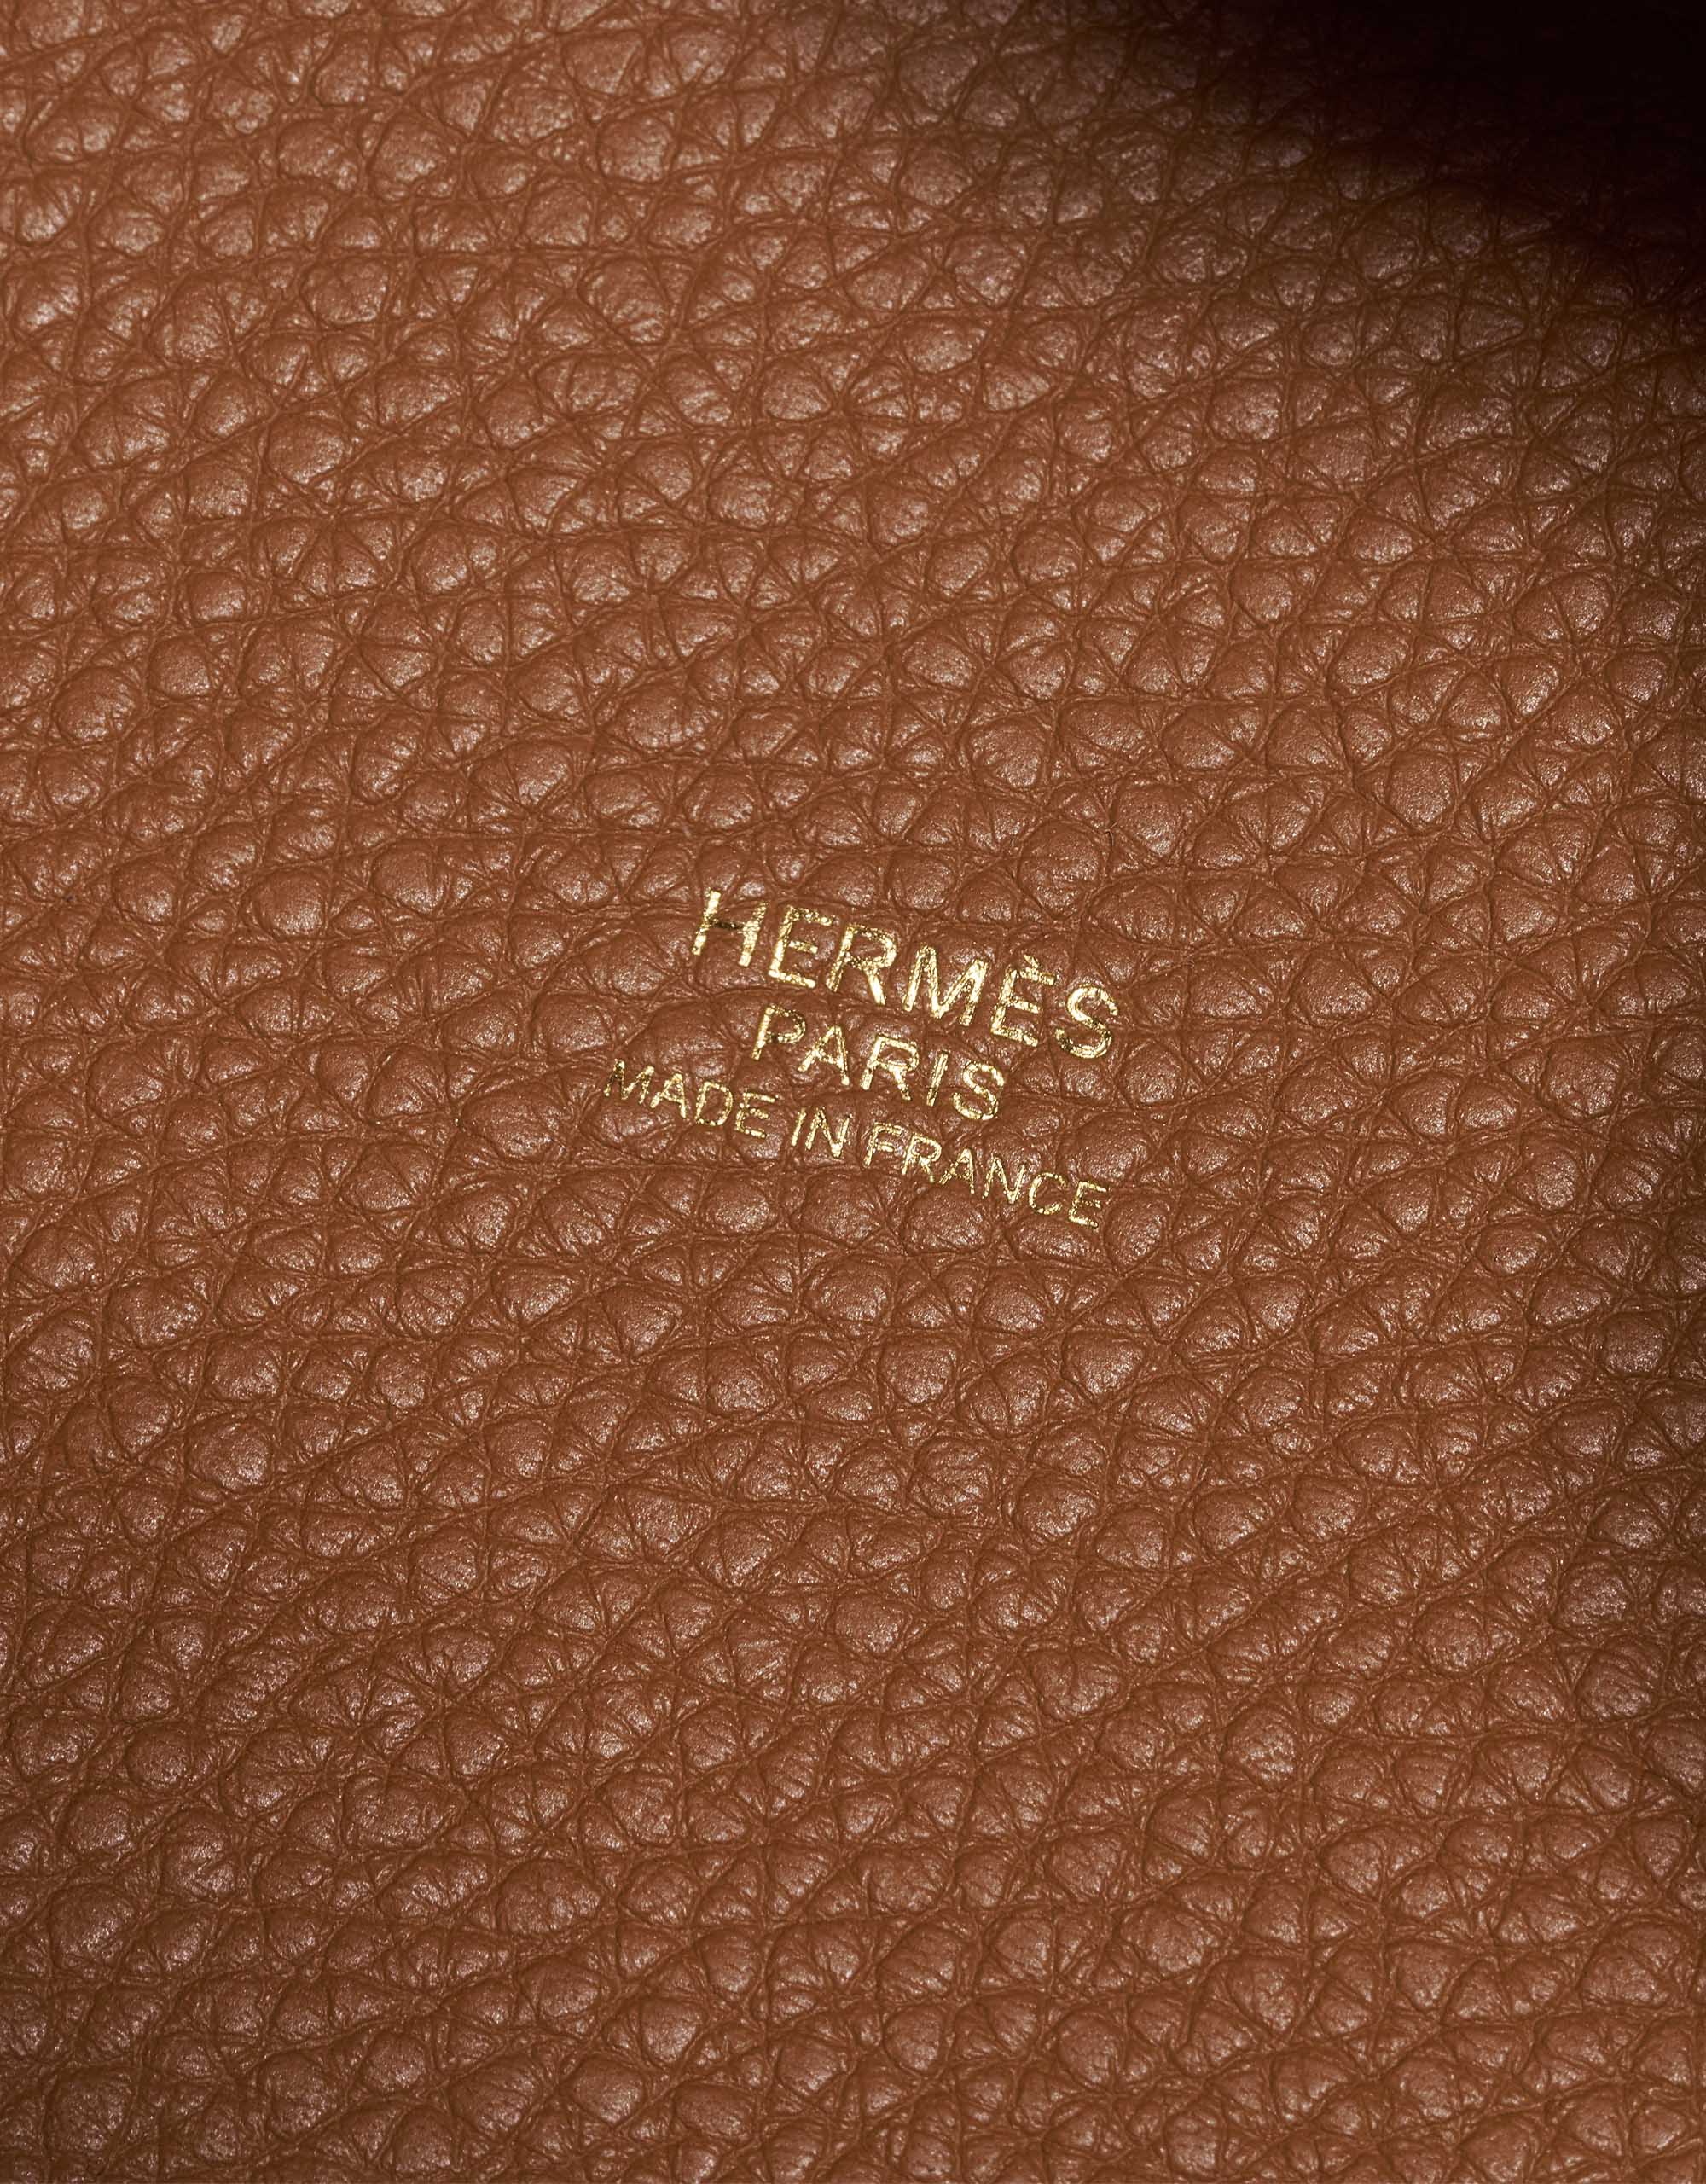 Sac Hermès d'occasion Picotin 18 Taurillon Clémence Gold Brown Inside | Vendez votre sac de créateur sur Saclab.com